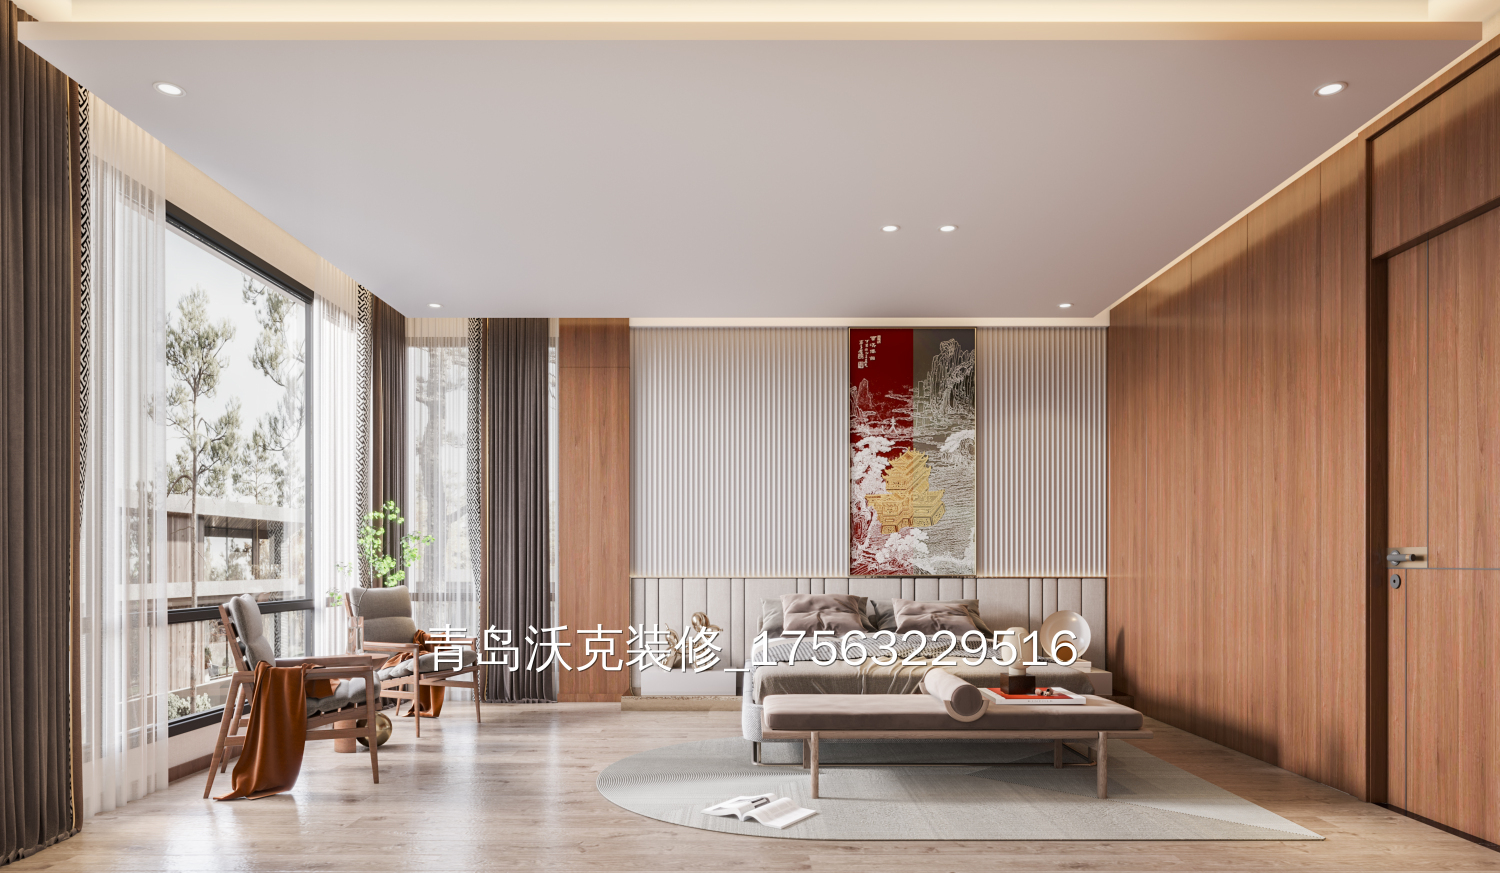 290多平方米新中式别墅整装装修设计图片